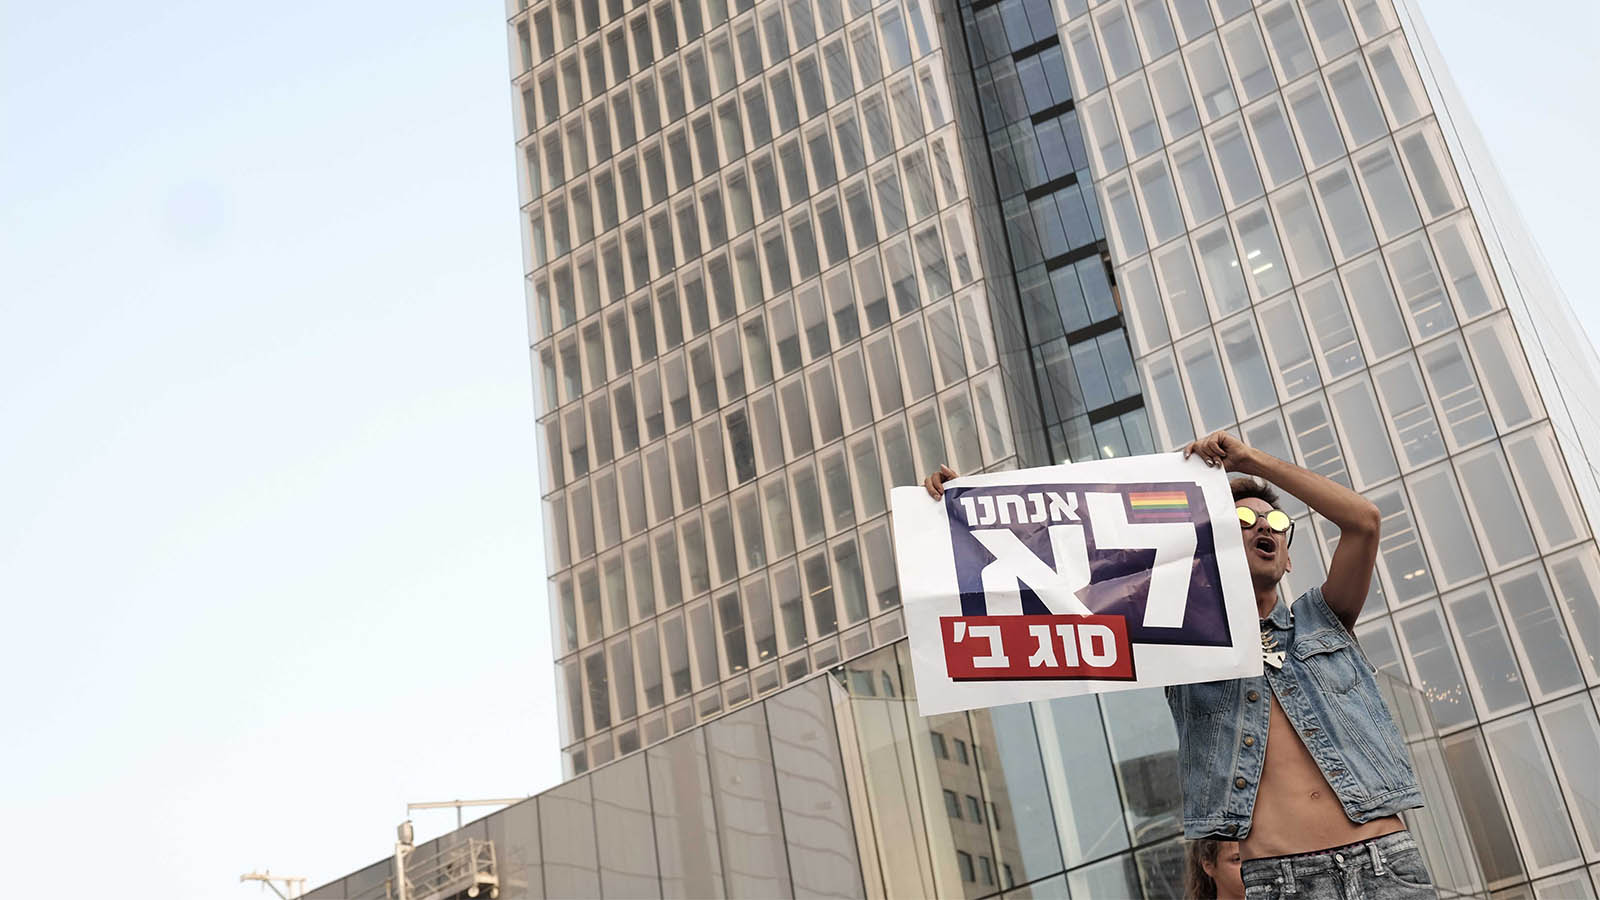 متظاهرون أمام وزارة الداخلية في تل أبيب من أجل حق أزواج مجتمع ميم في تبني الأطفال (تصوير: تومير نويبرغ/ فلاش 90)